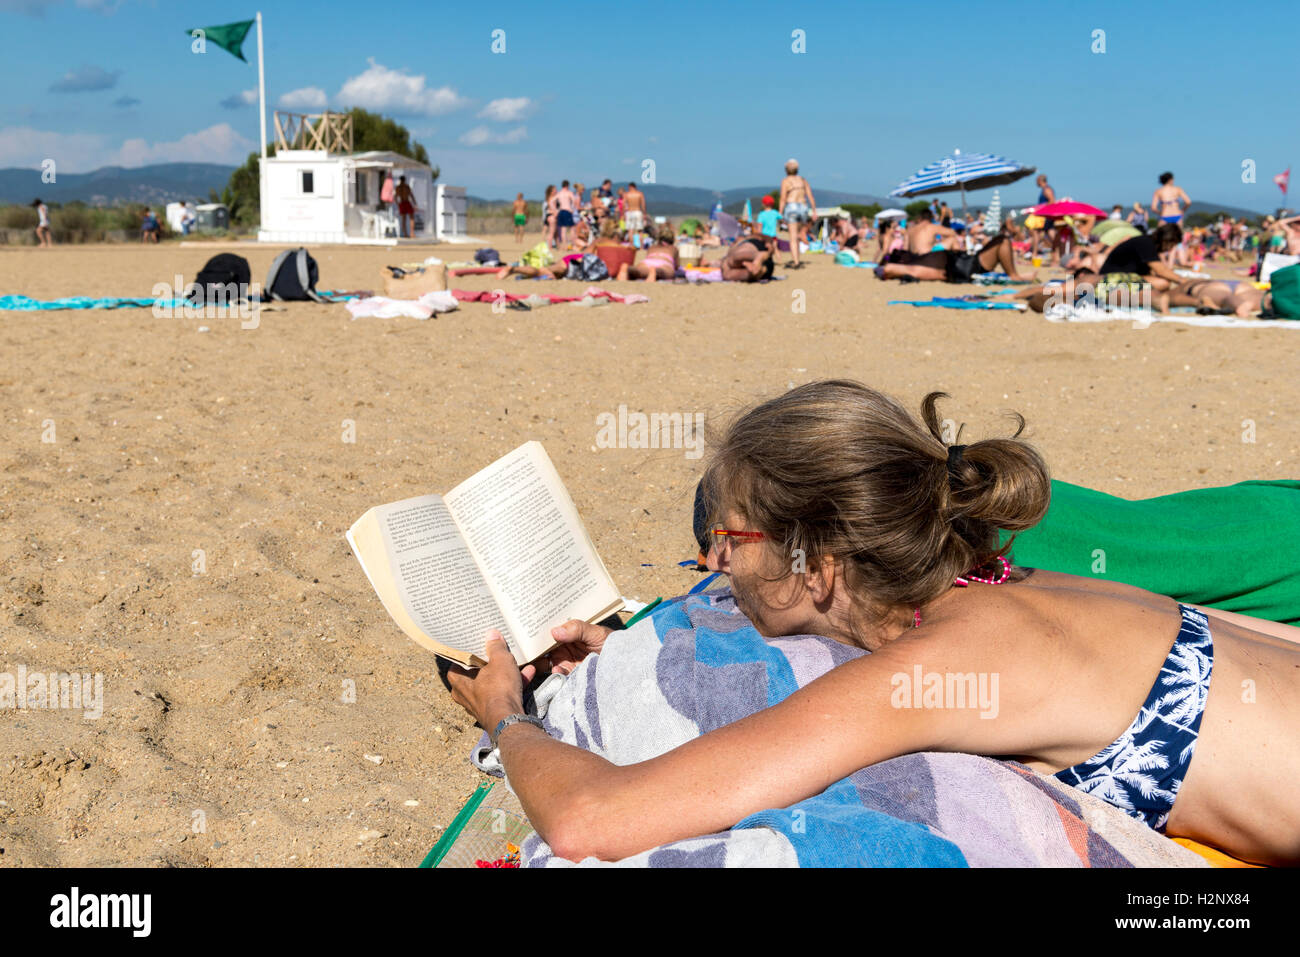 Femme allongée sur la plage en lisant un livre, libre, Plage des Salins, Hyères, Côte d'Azur, France Banque D'Images